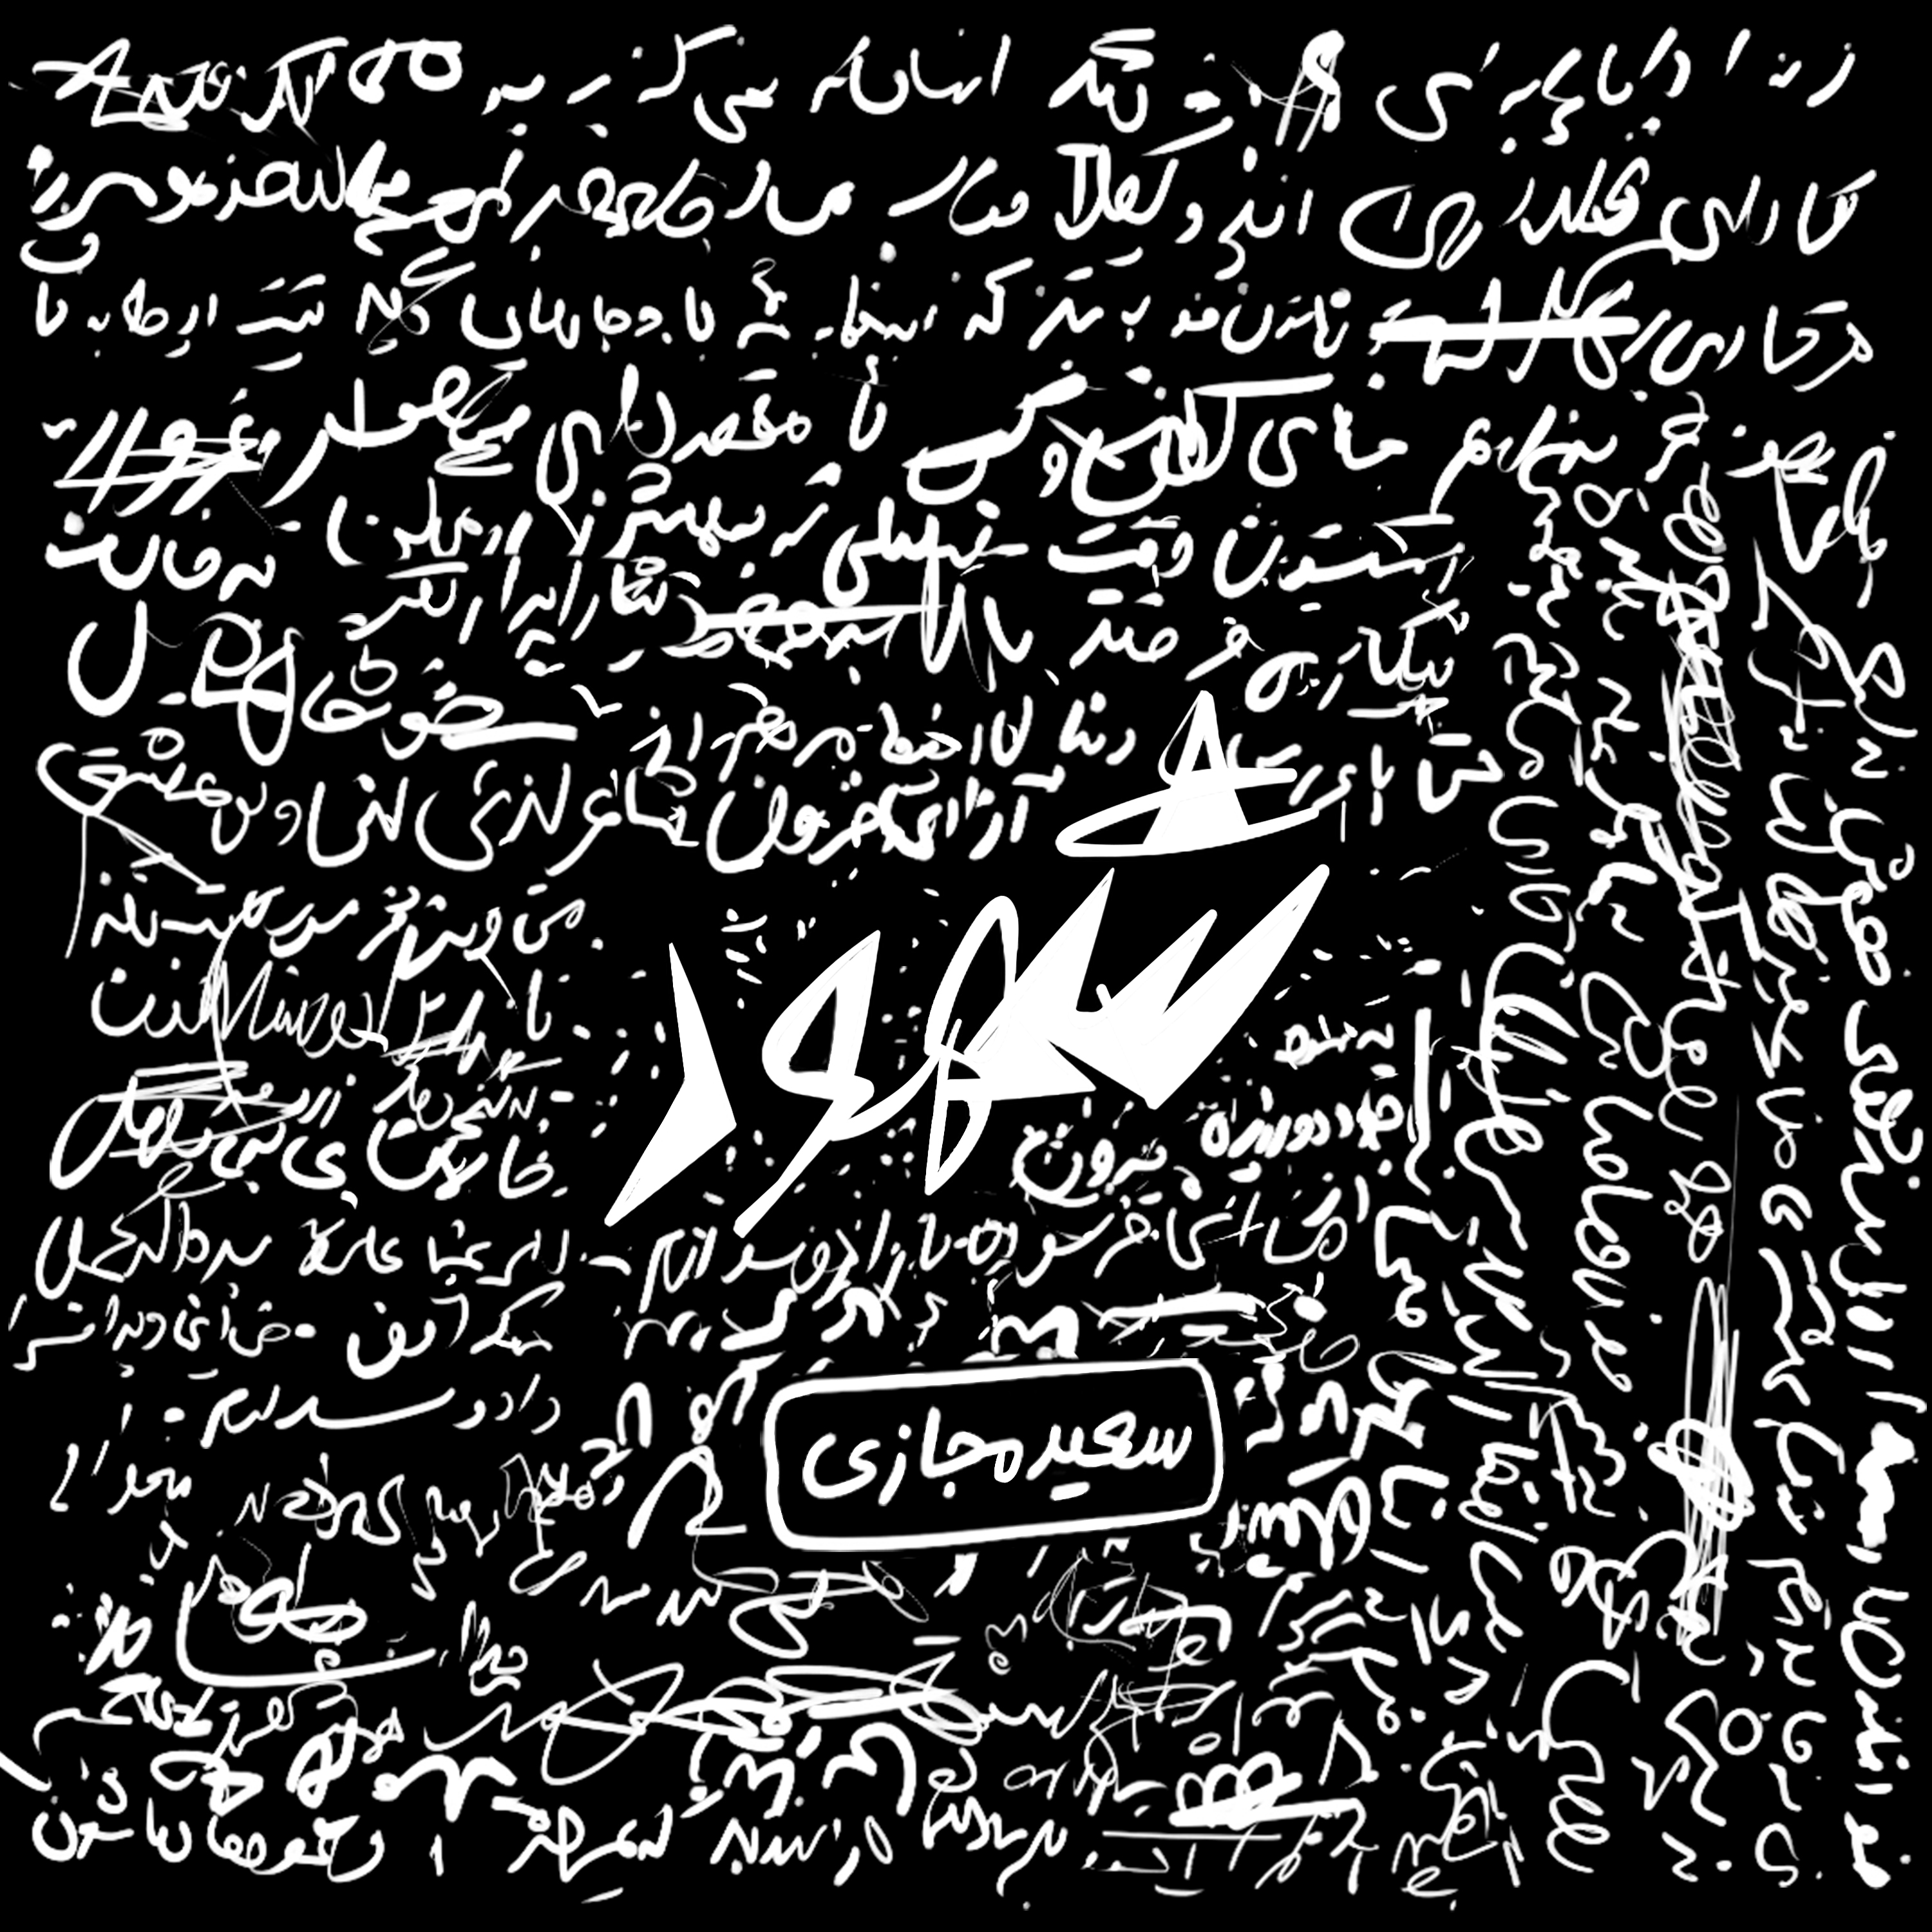  دانلود آهنگ جدید سعید مجازی و رضا رظیم - دوشیزه | Download New Music By SaeeD Majazi - Dooshize (feat. Reza Rozim)